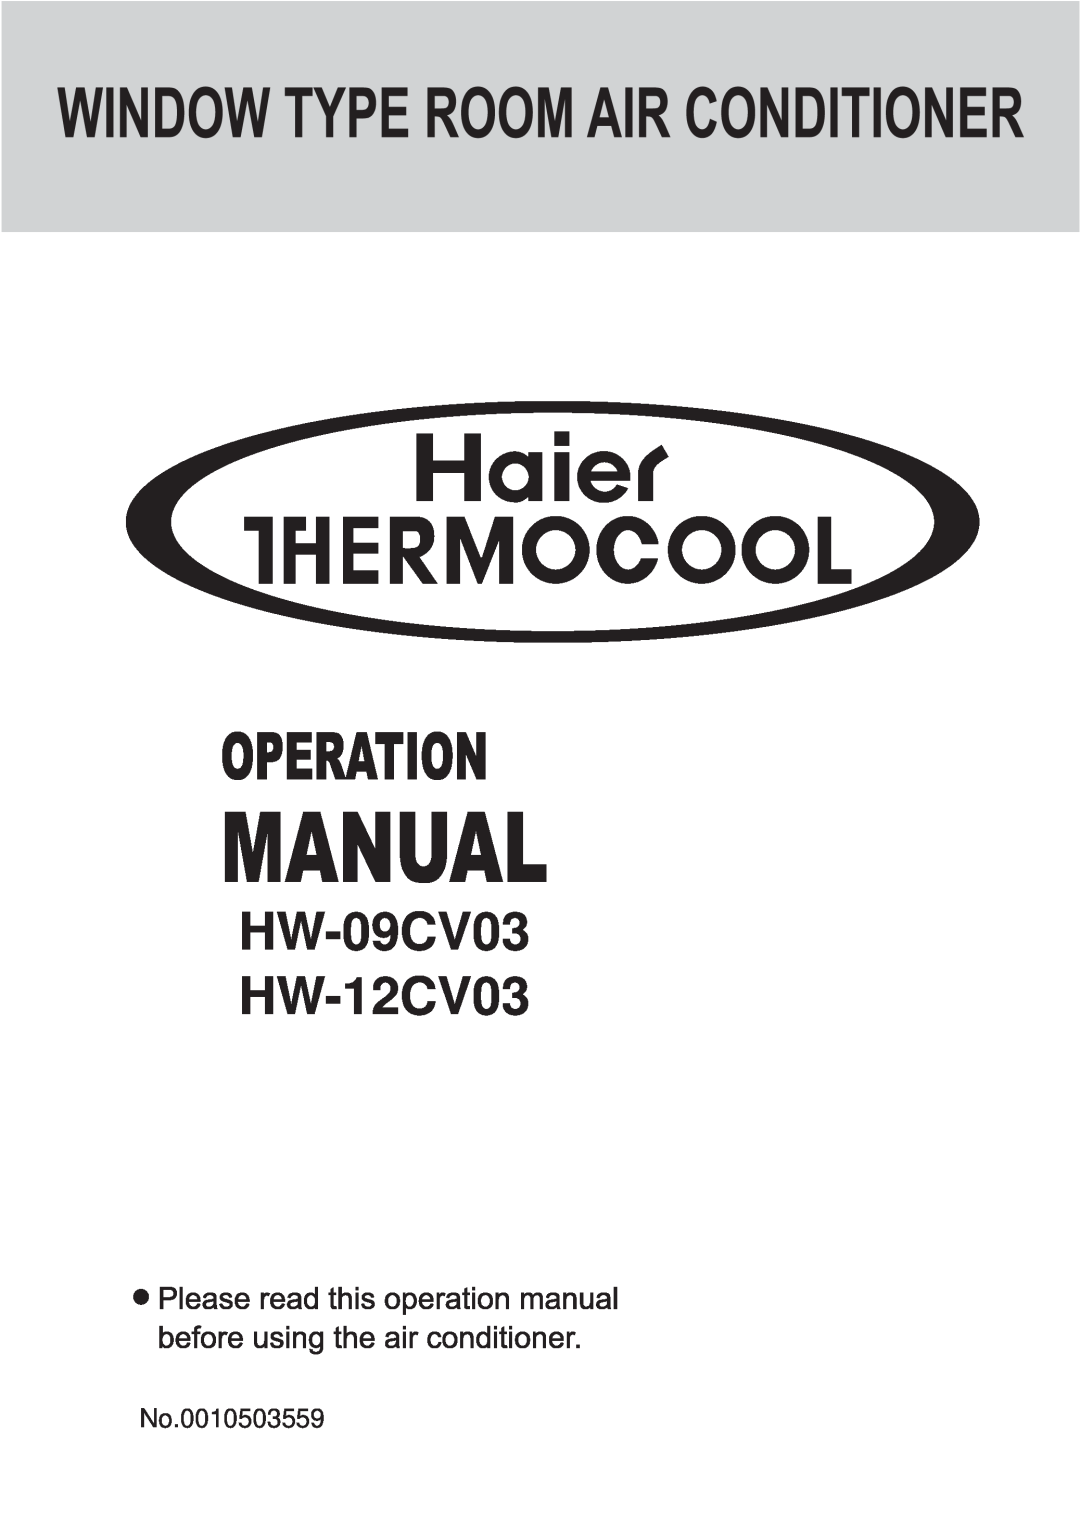 Haier manual HW-09CV03 HW-12CV03, No.0010503559 